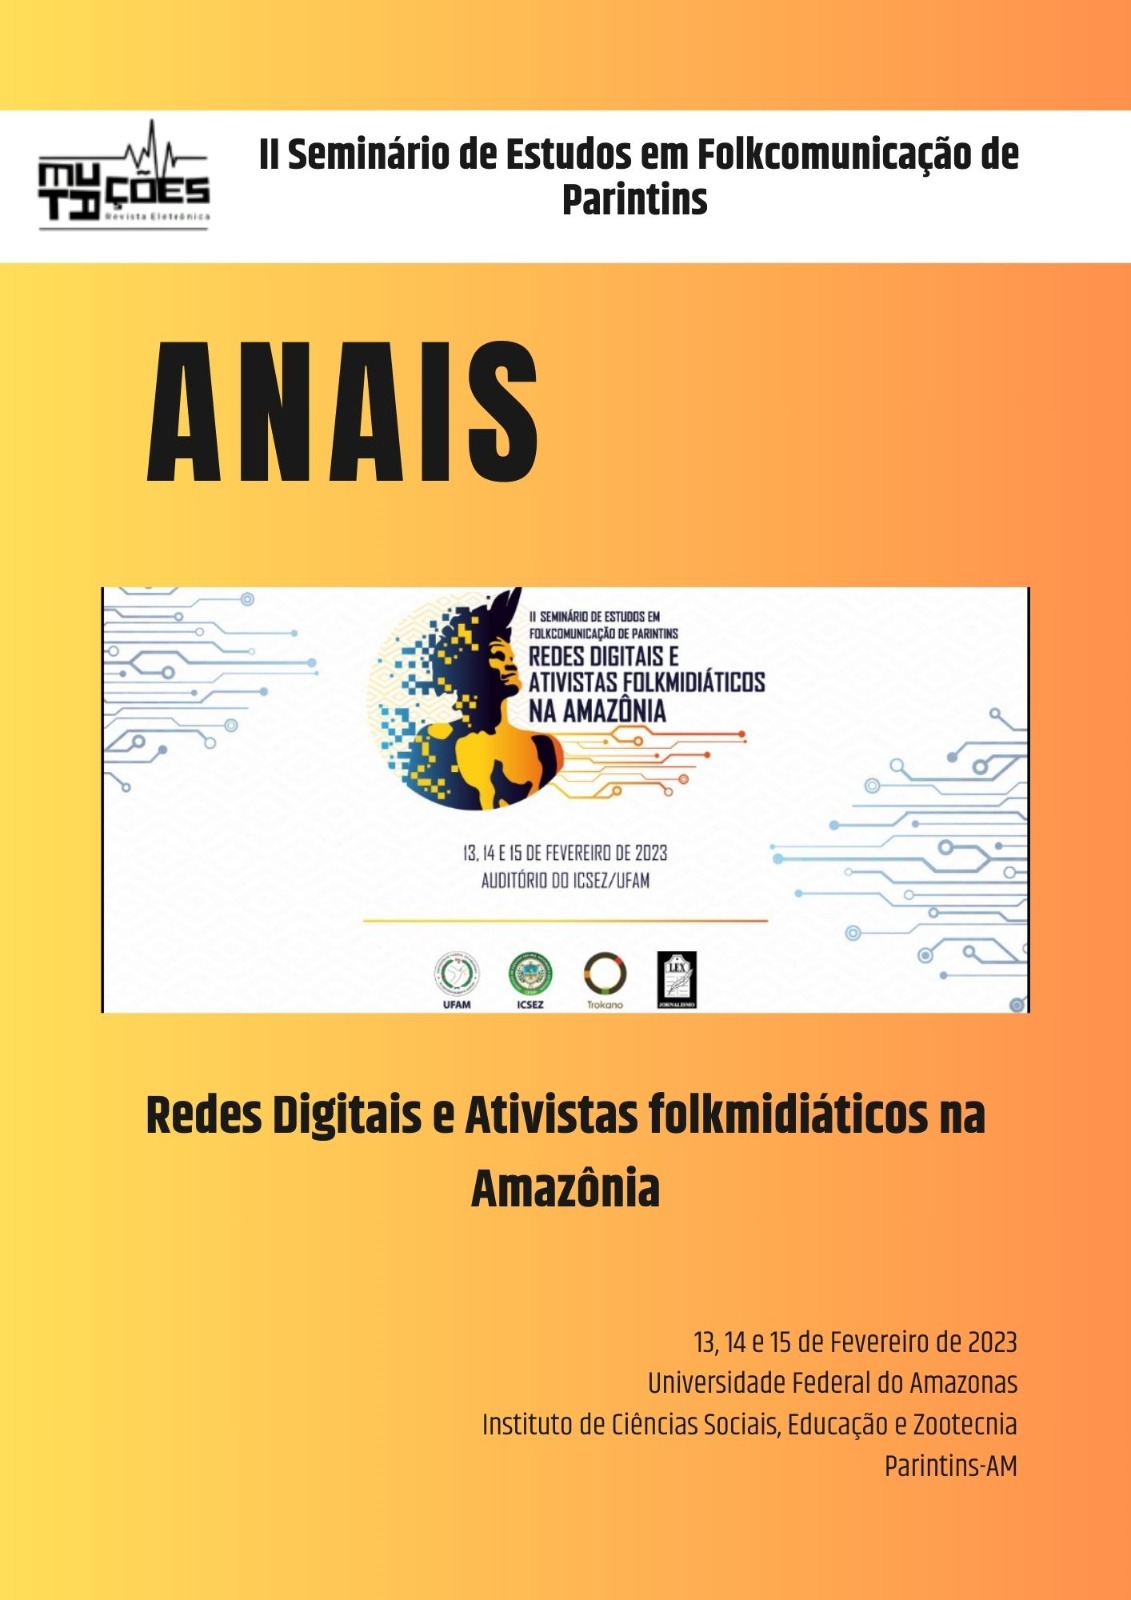 					View Vol. 16 No. 26, Sup. 3 (2023): Anais do II Seminário de Estudos em Folkcomiunicação de Parintins: “Redes Digitais e Ativistas Folkmidiáticos na Amazônia”
				